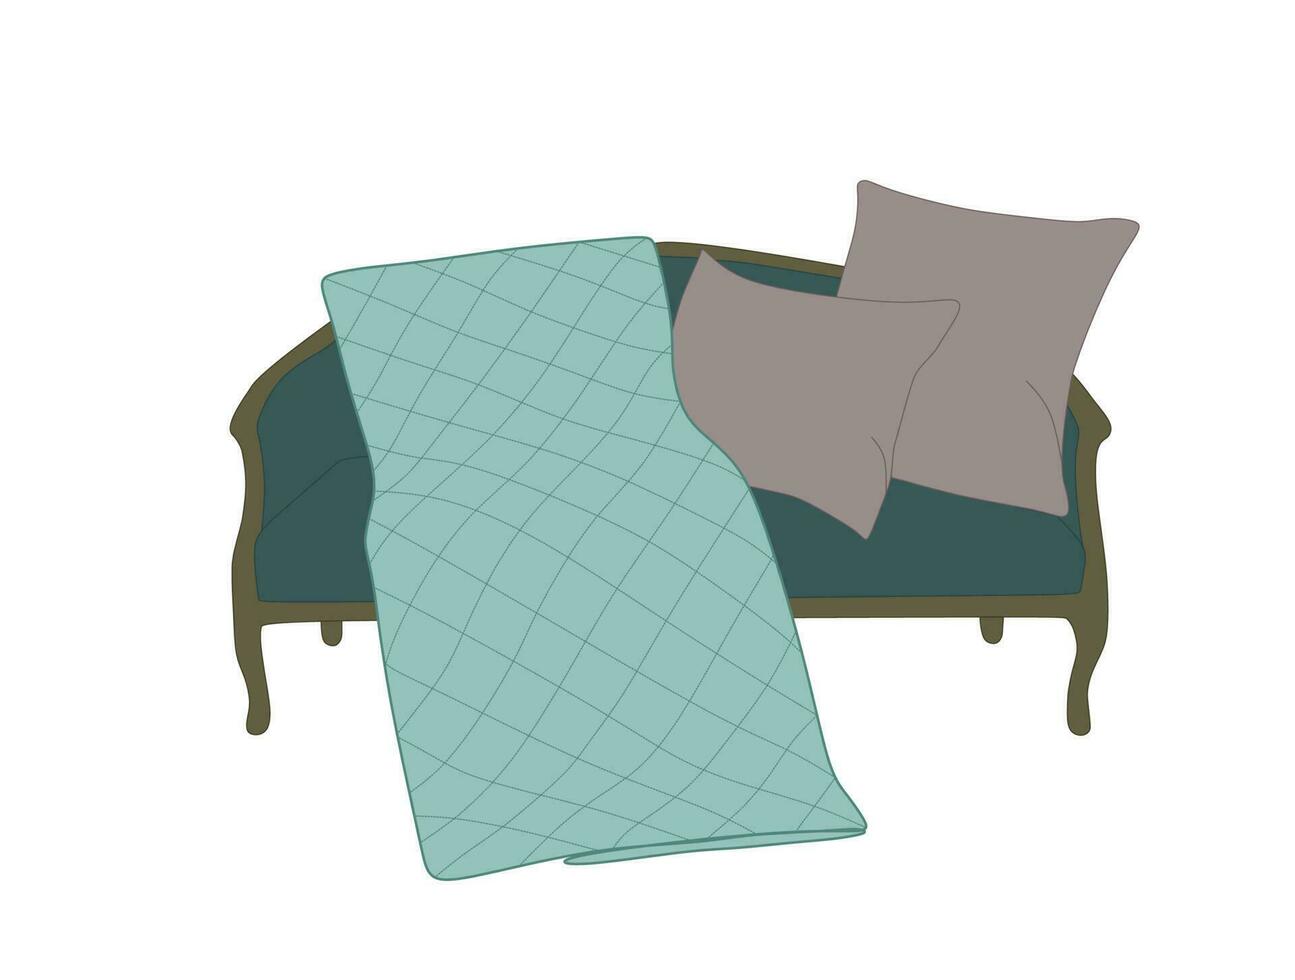 Clásico sofá en plano estilo. dibujos animados turquesa sofá con cobija y almohadas, mueble decoración de vivo habitación aislado en blanco. vector ilustración de, mueble interior decoración de hogar departamento.